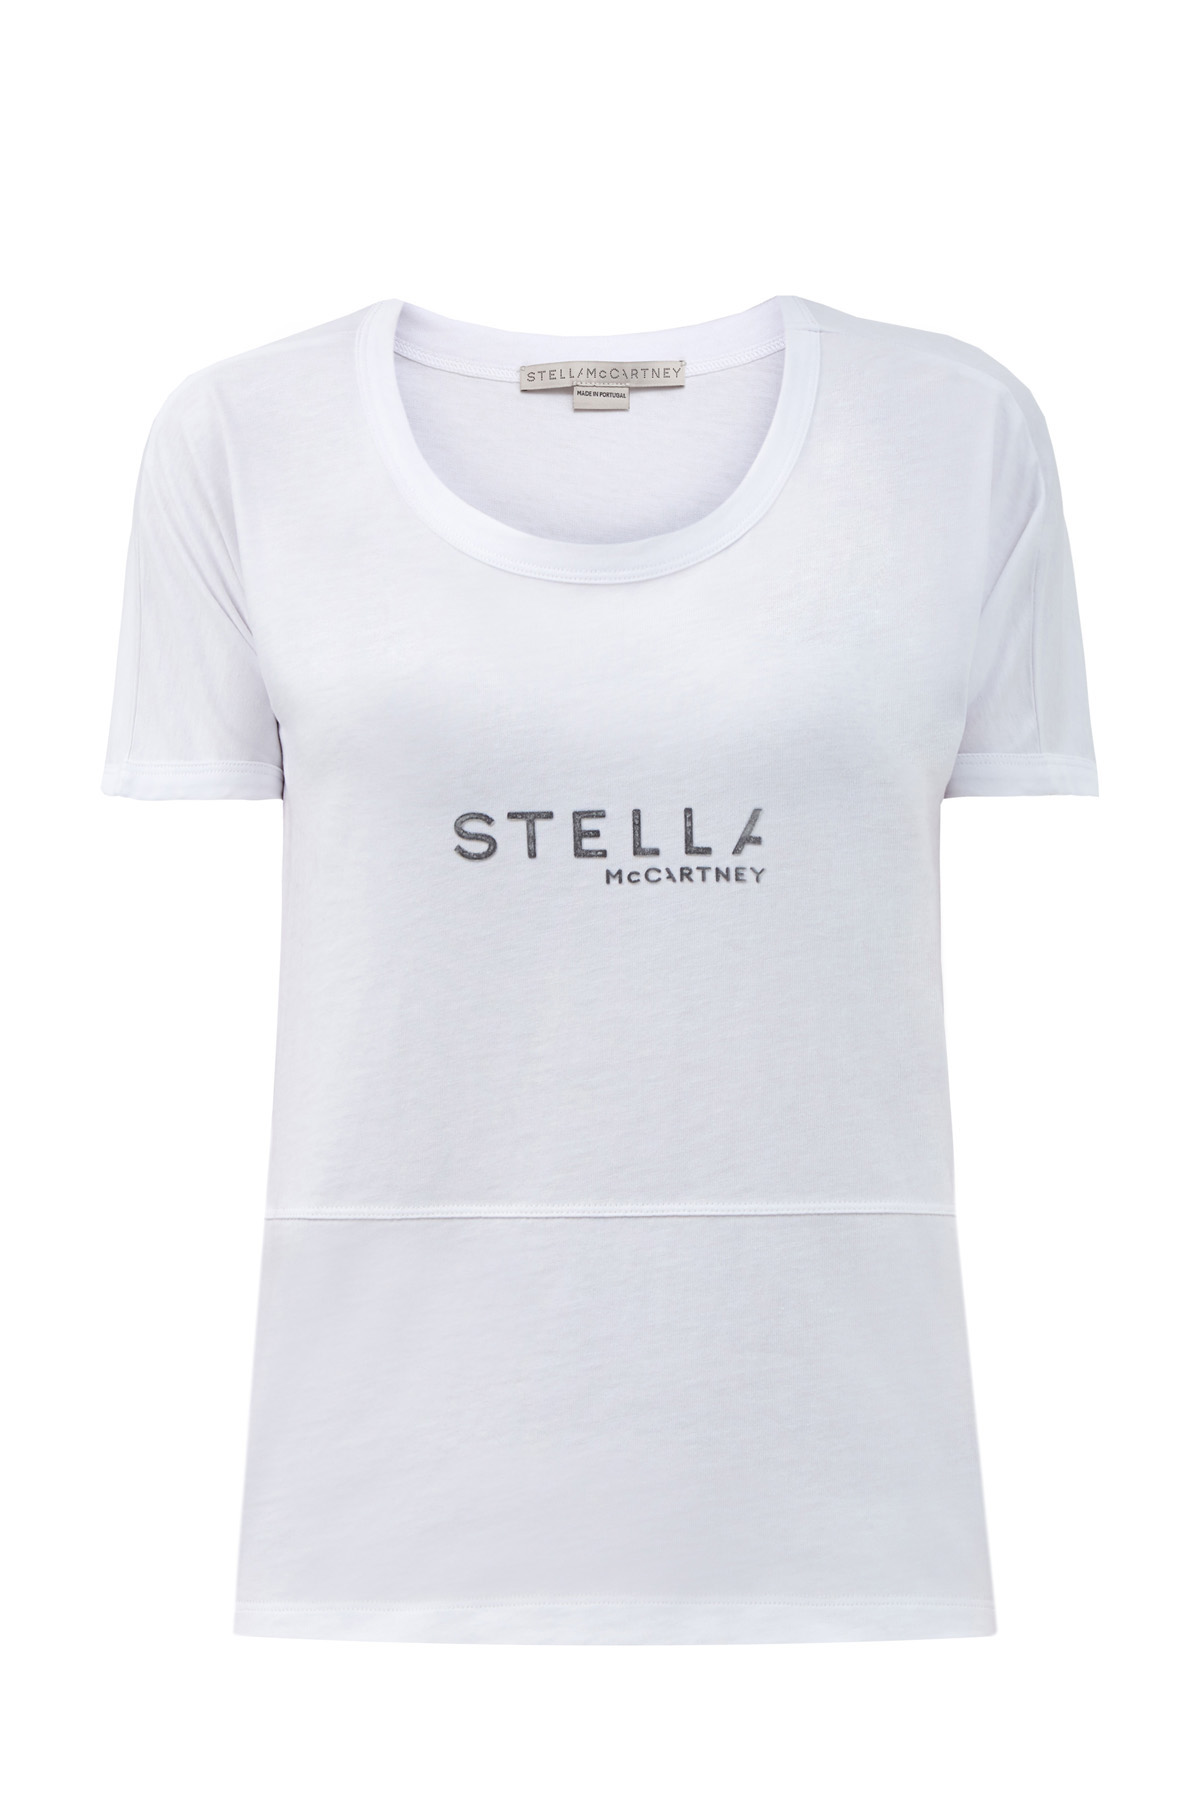 Хлопковая футболка с объемными швами и логотипом STELLA McCARTNEY, цвет белый, размер 36;38;40 - фото 1